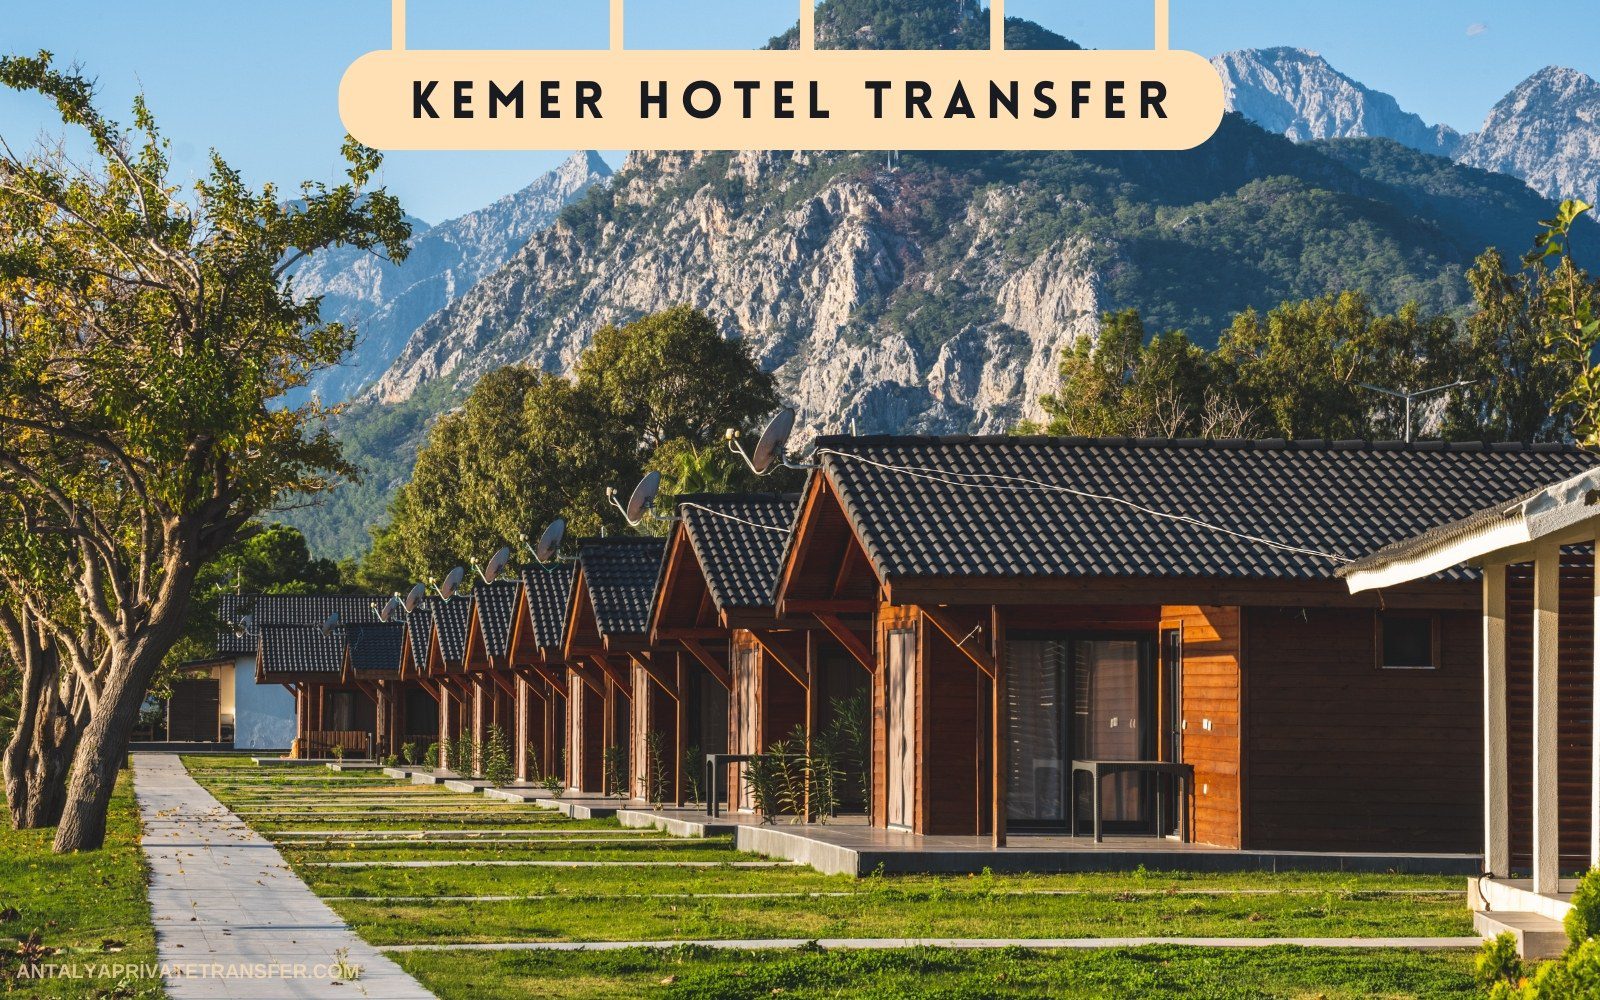 Kemer Hotel Transfer